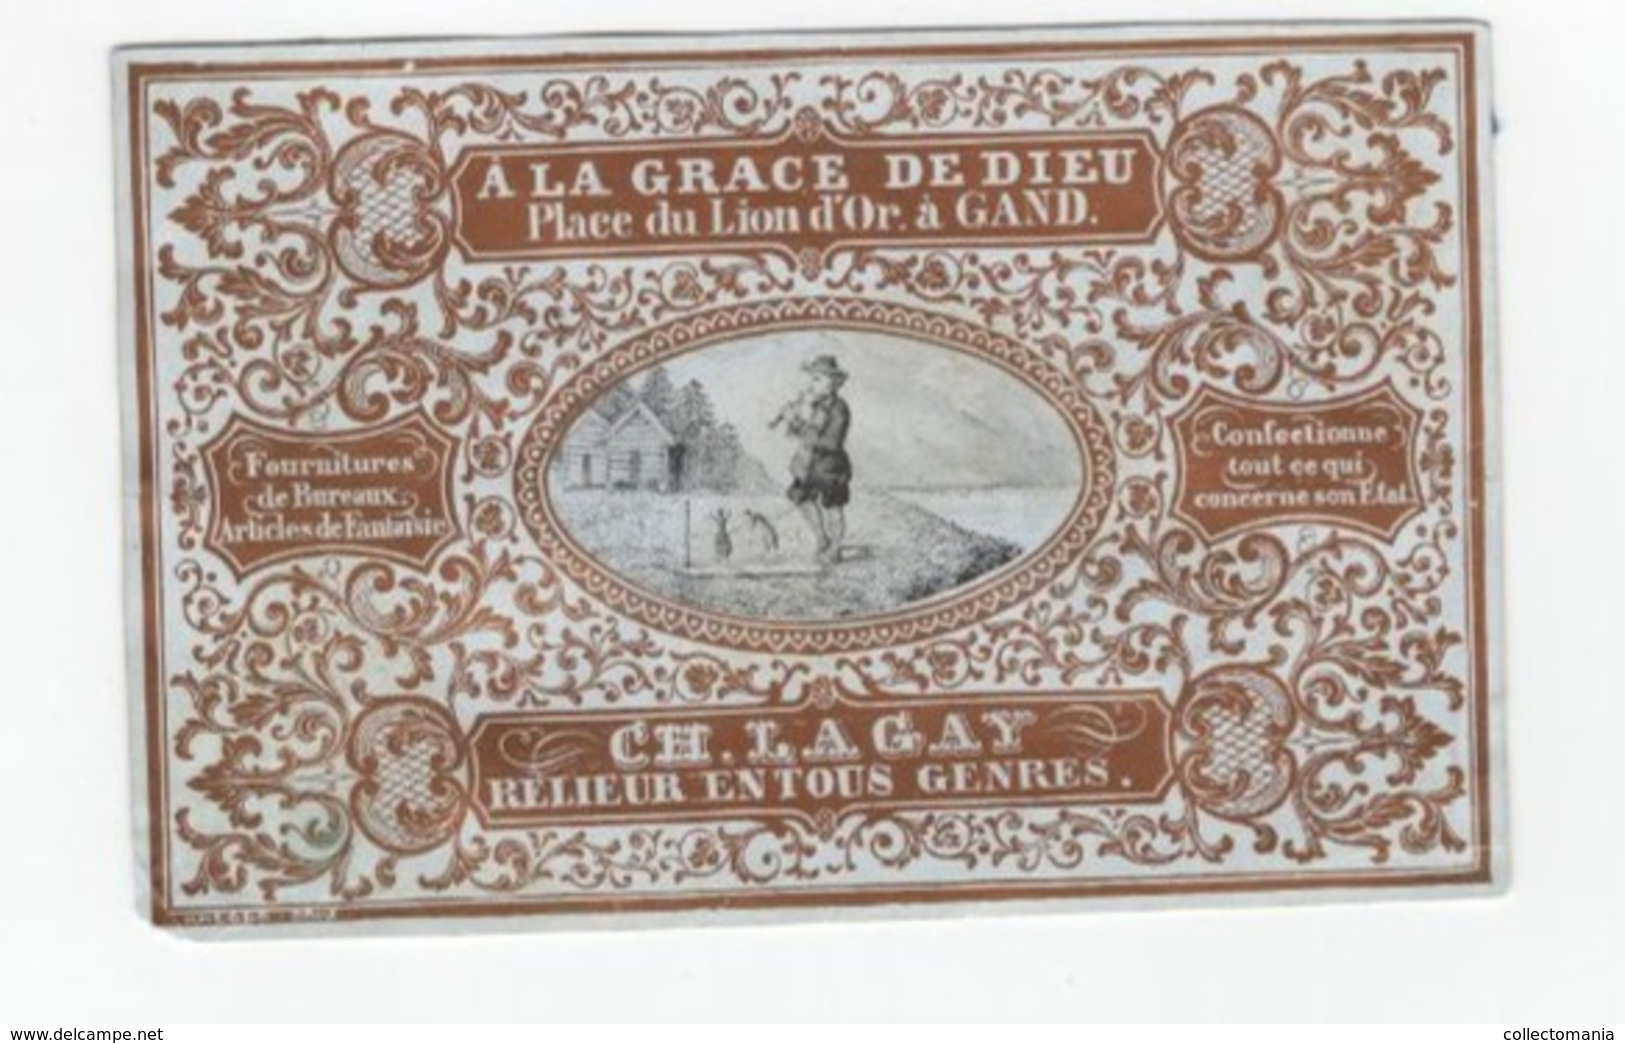 1 Carte Porcelaine A La Grace De Dieu Place Du Lion D'Or Gand  :Ch.Gay Relieur Lith.Heger Brau  Afm.: 13x8,5cm - Porcelaine